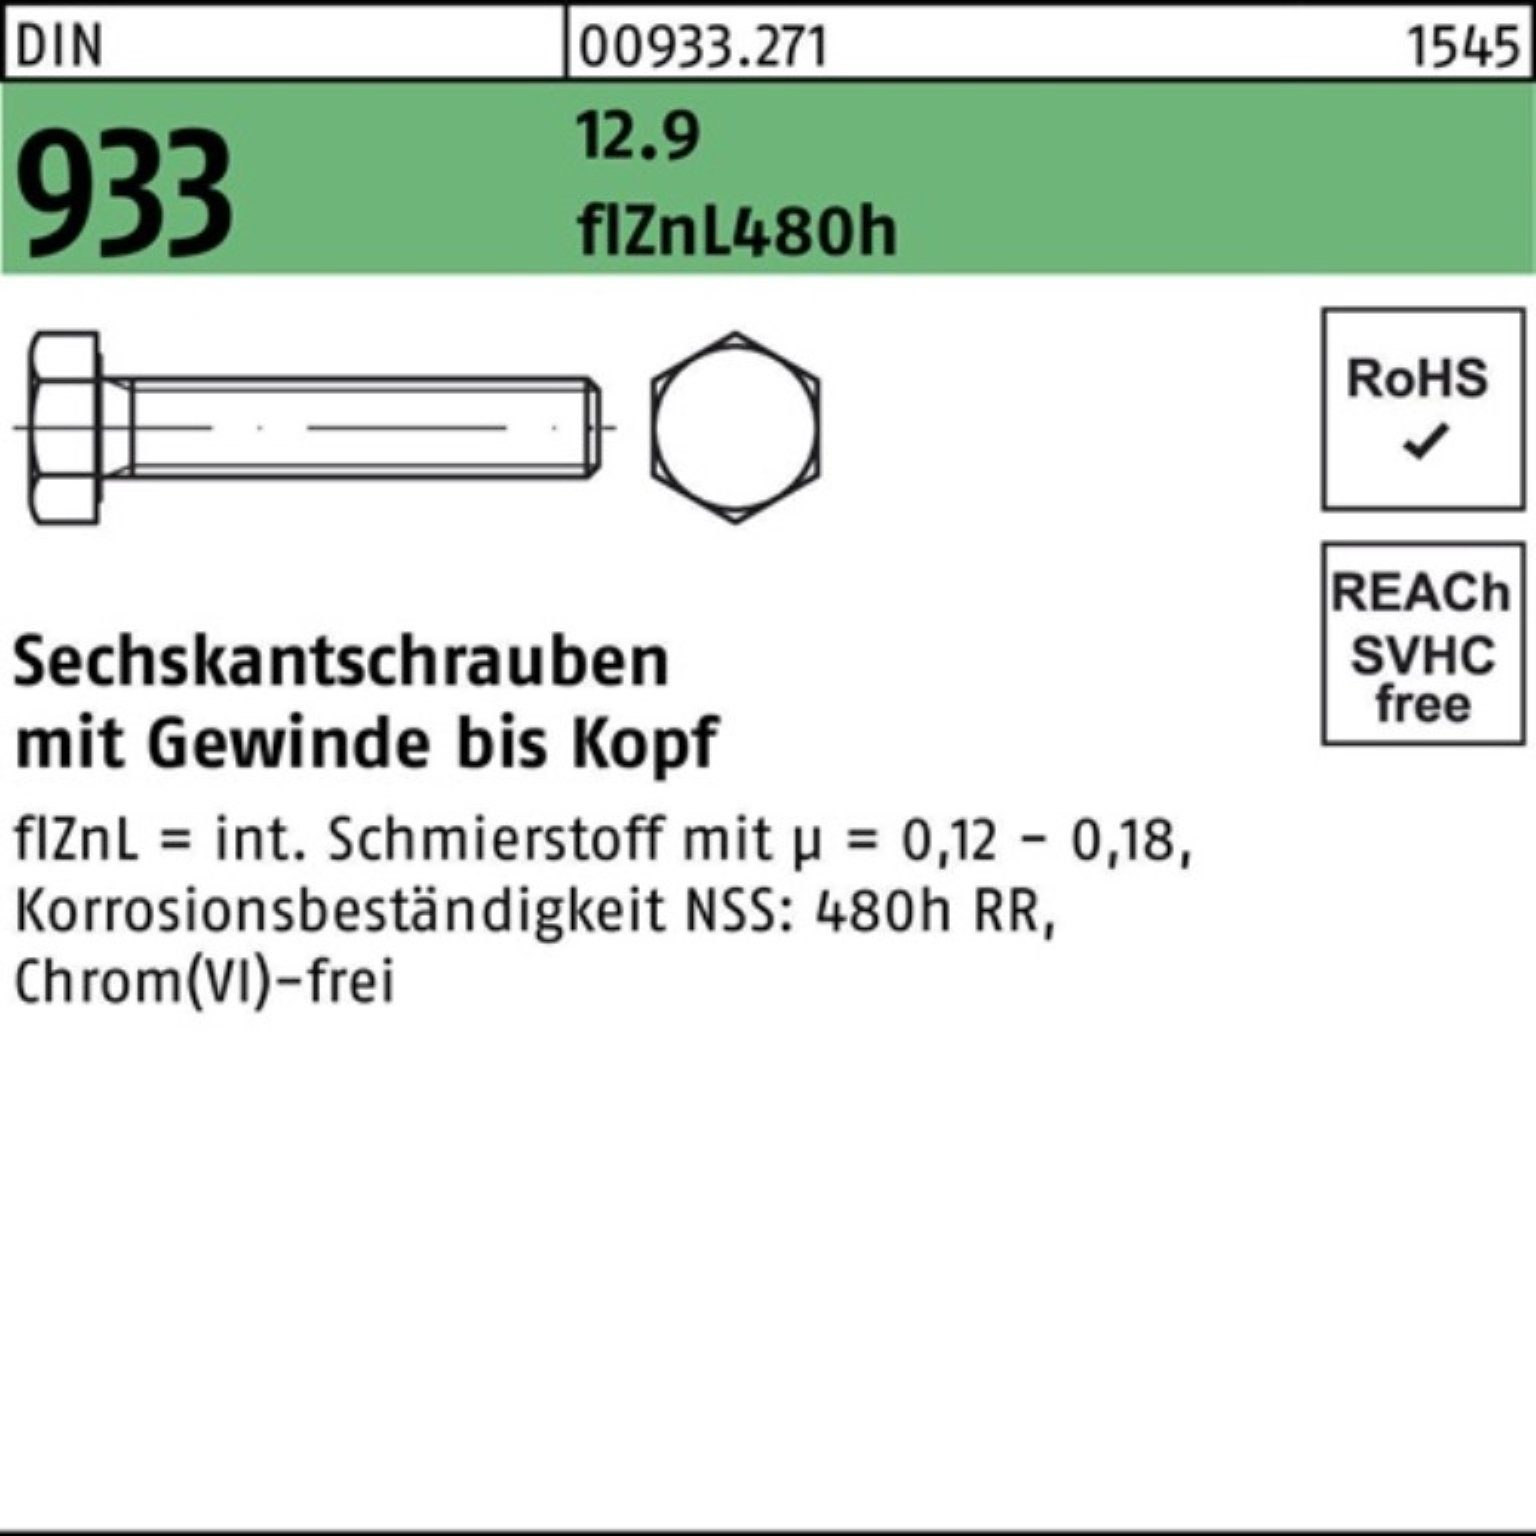 M8x 200er DIN Sechskantschraube 12.9 flZnL VG Pack Reyher 933 40 Sechskantschraube zinklam 480h